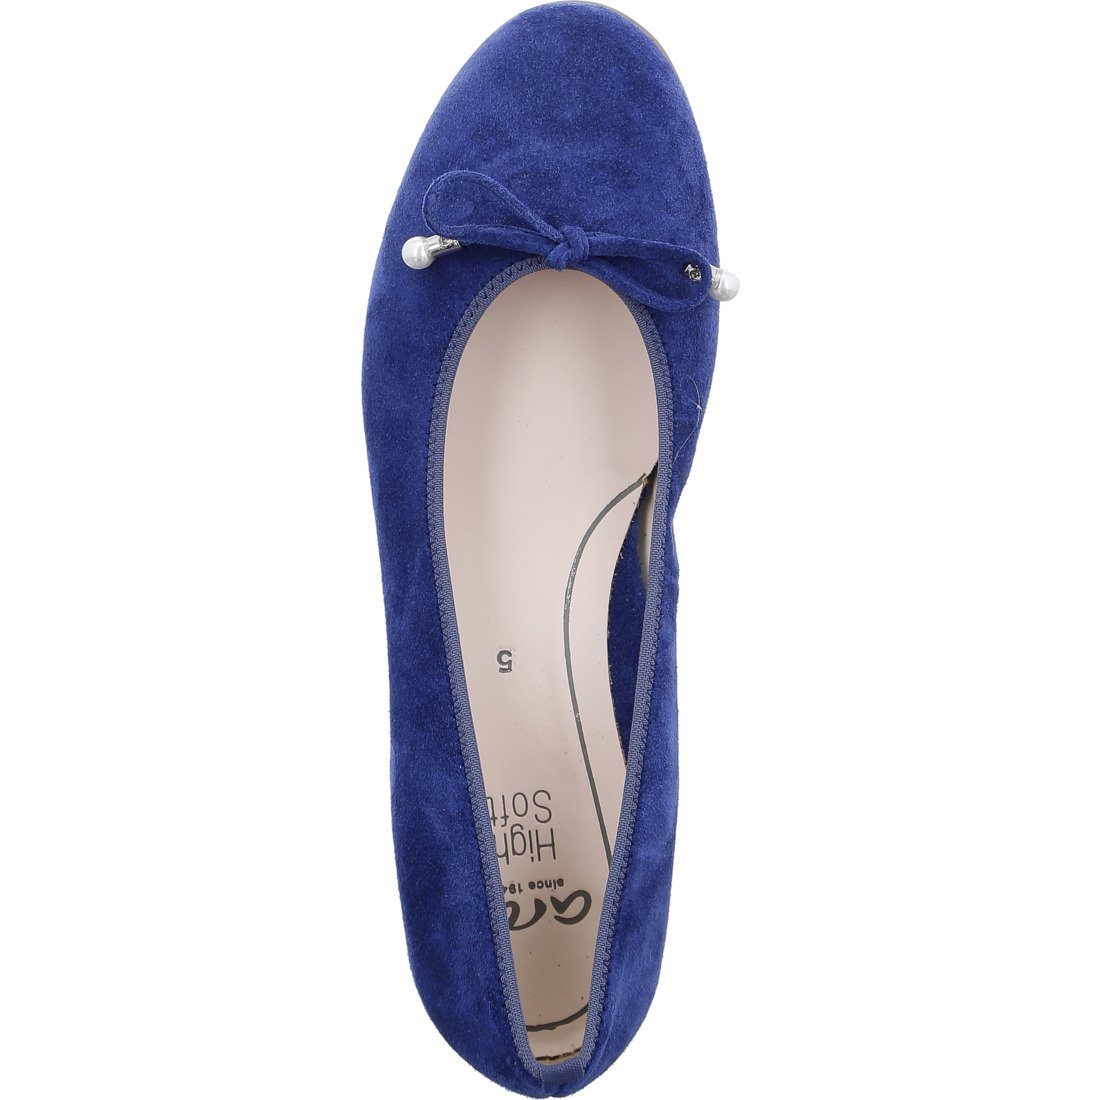 Sardinia blau Ballerina Schuhe, Ara Ara Damen 048108 Rauleder - Ballerina